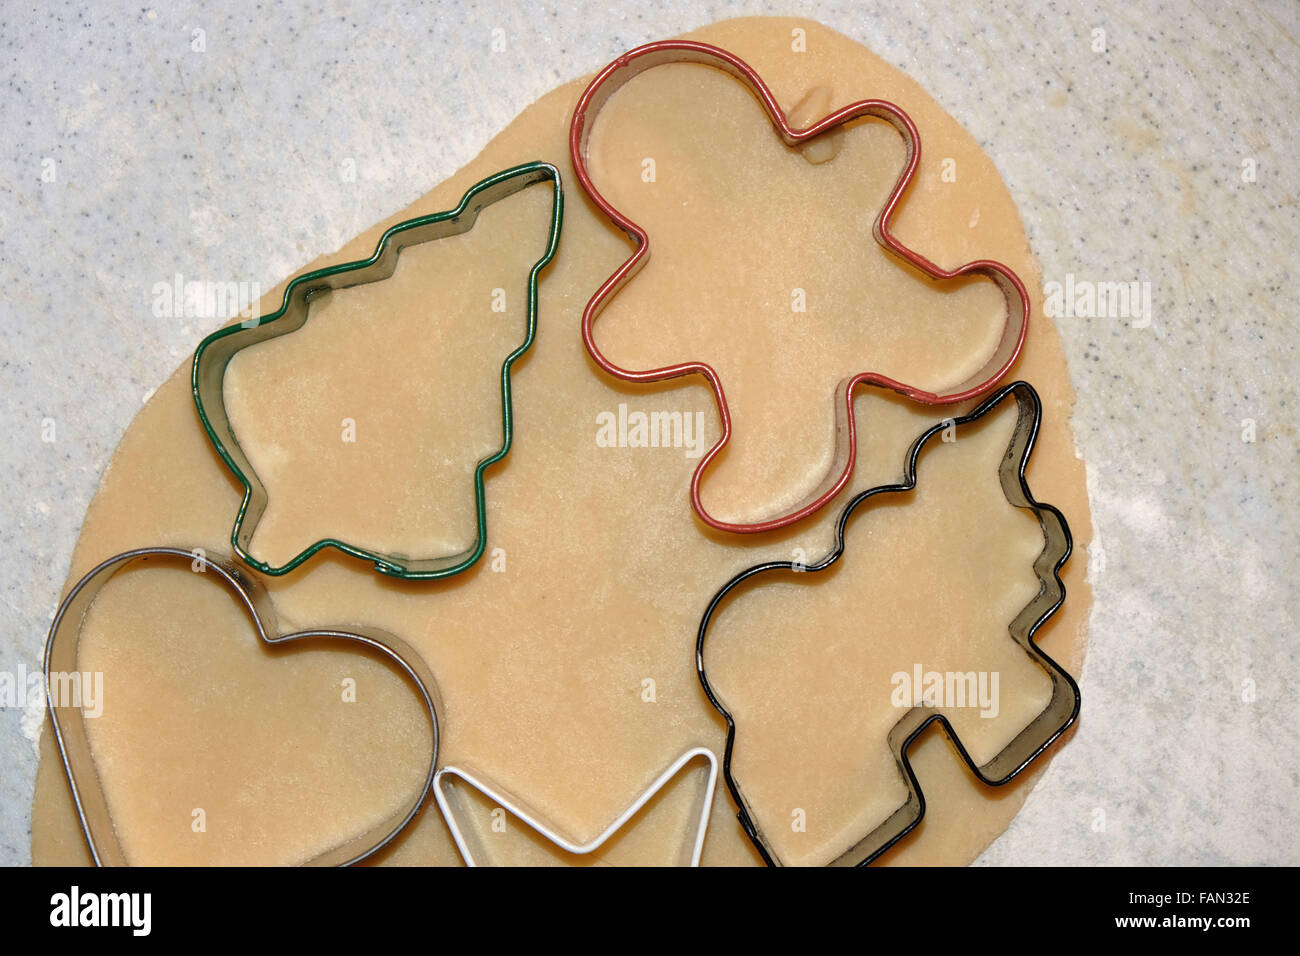 Weihnachten-Zucker-Cookie-Teig mit Ausschnitten. Stockfoto